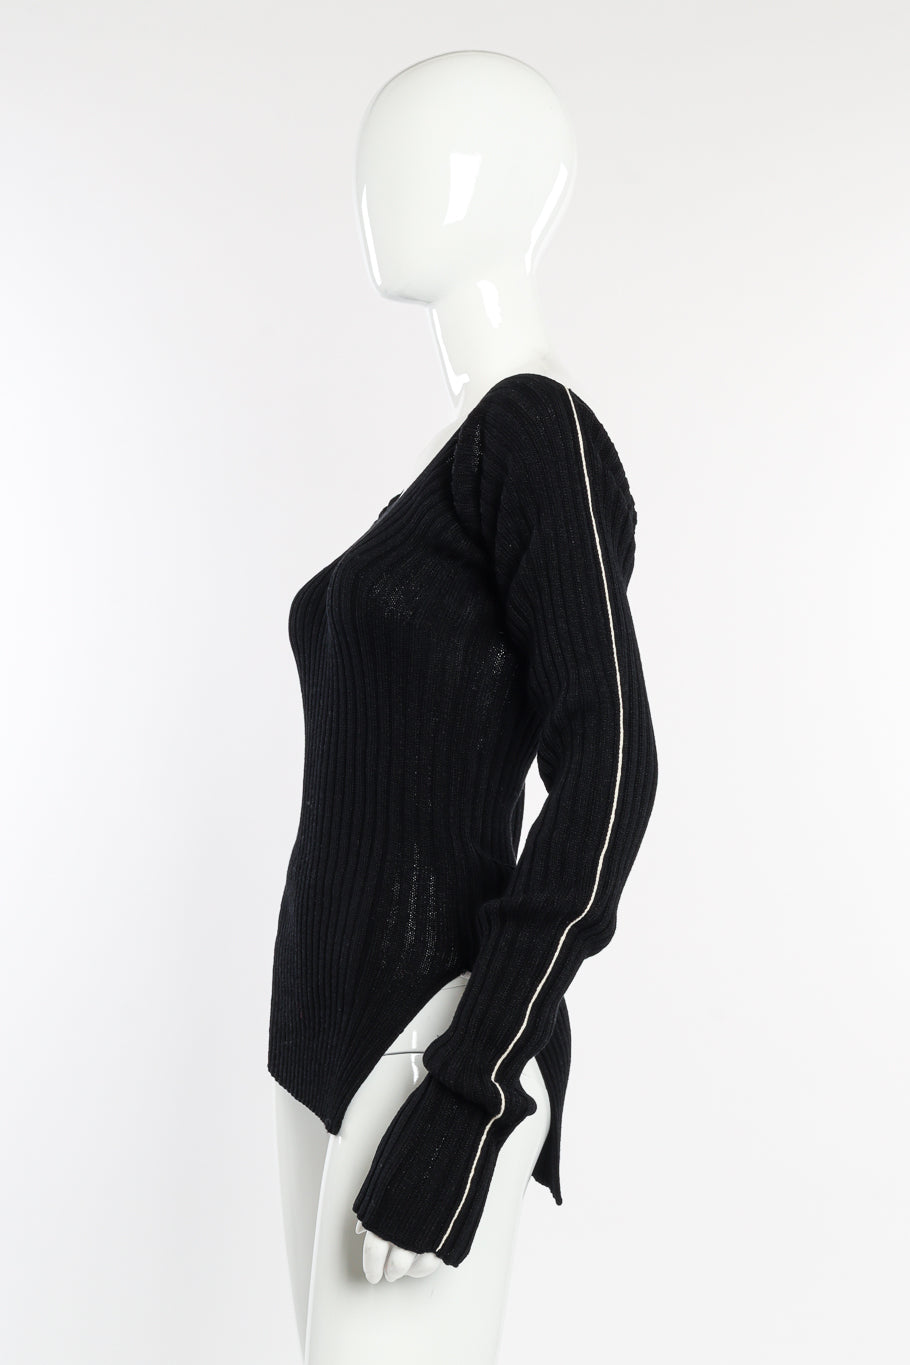 Celine Ribbed Knit Sweater Dress side on mannequin @recessla